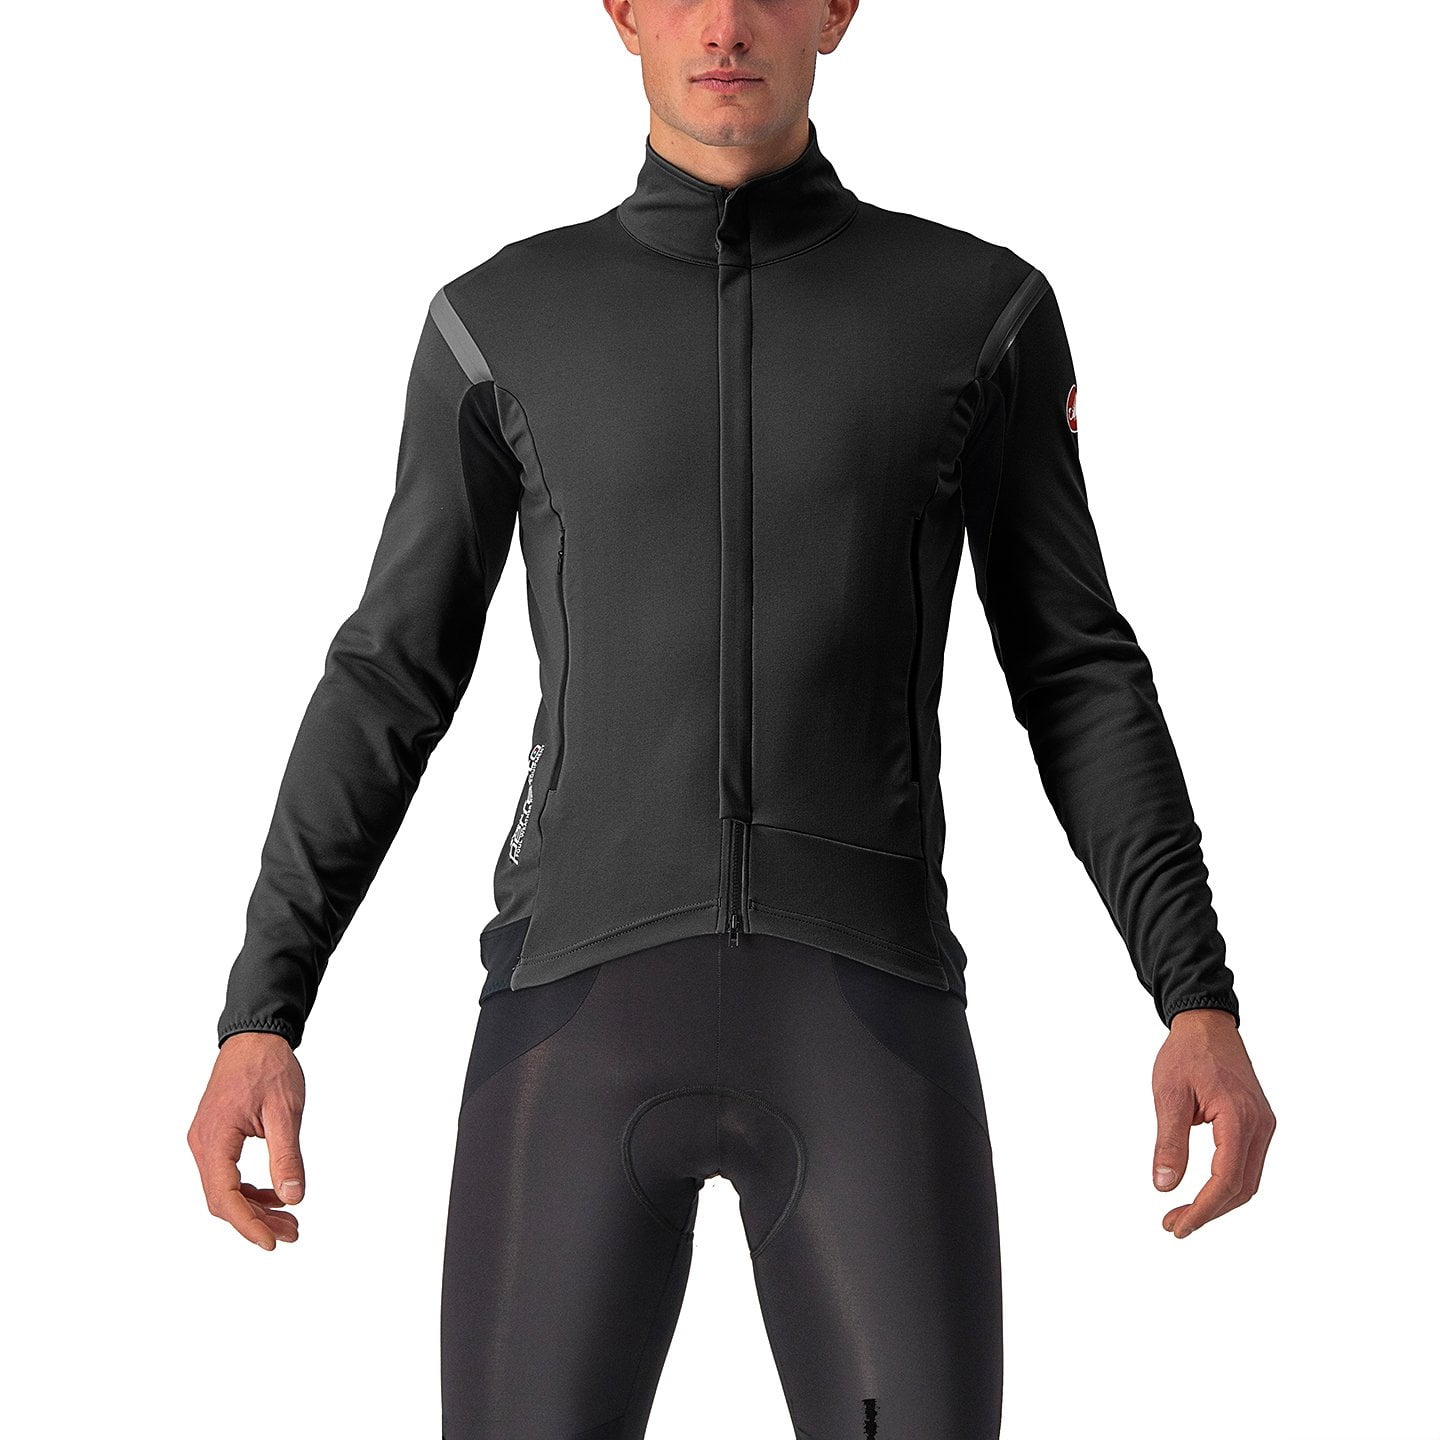 CASTELLI Perfetto RoS 2 Light Jacket Light Jacket, for men, size 3XL, MTB jacket, Cycling gear